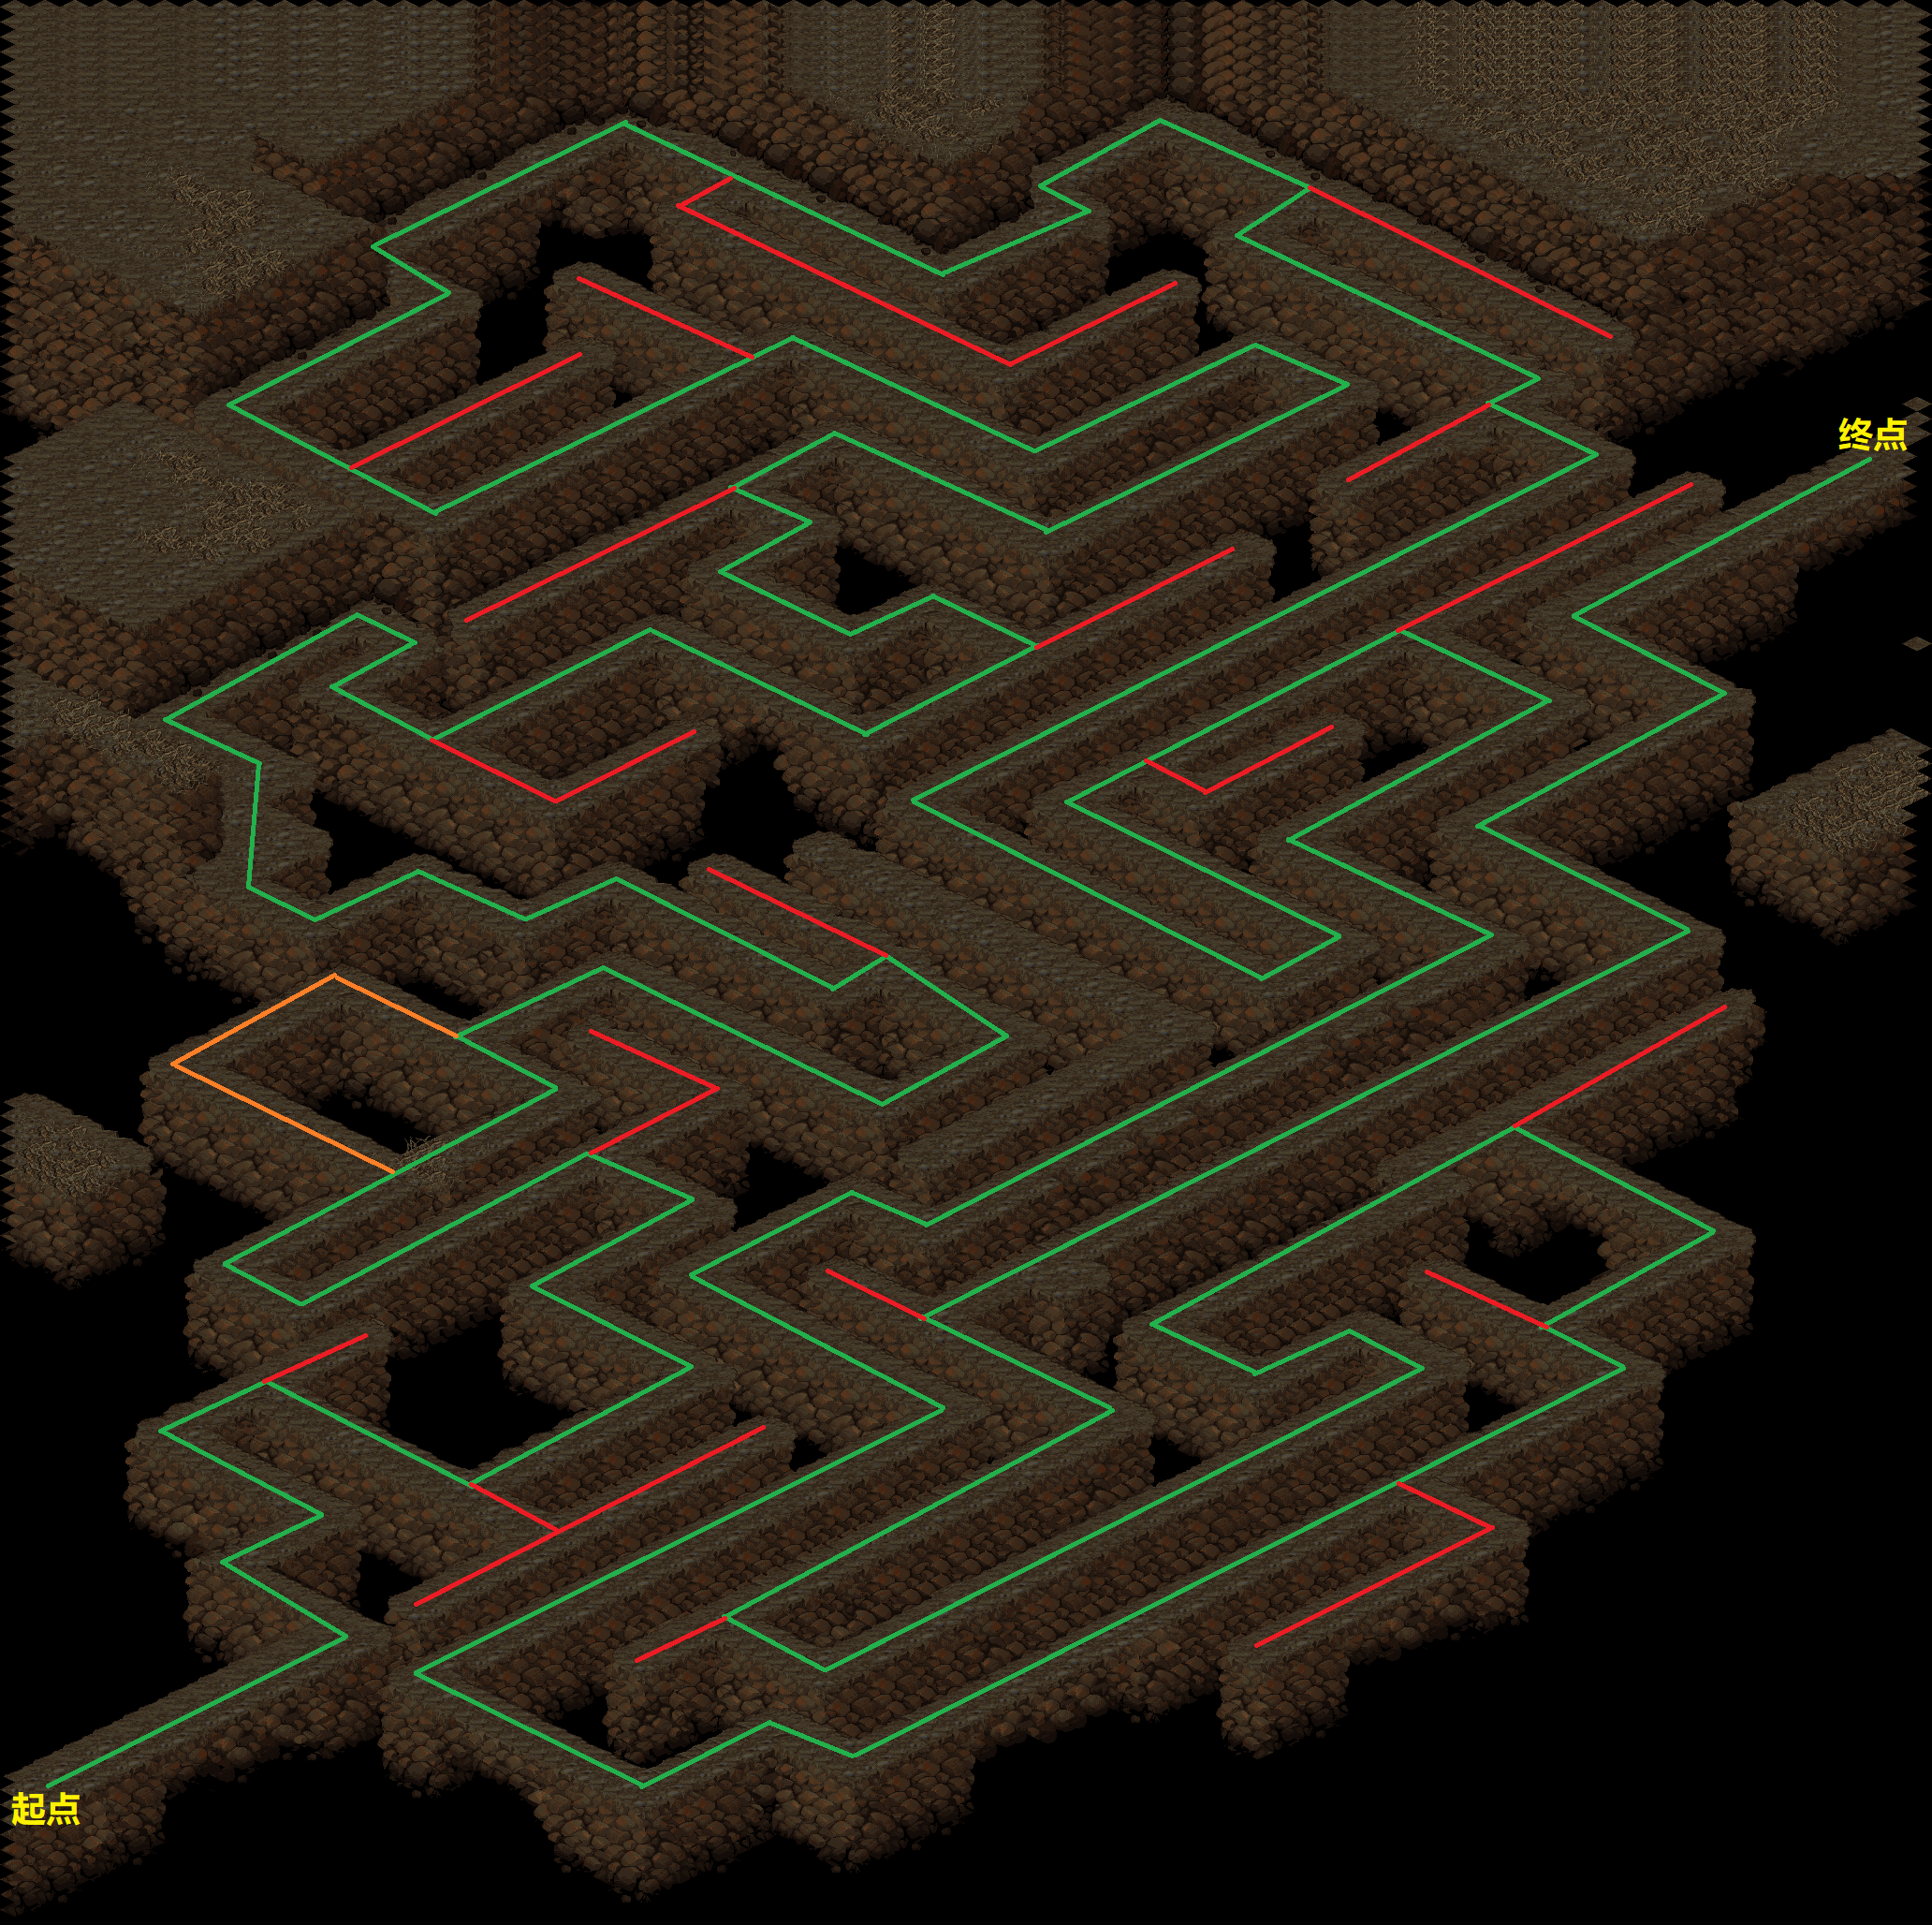 前段这个迷宫还是很有dos版特色的,就是主路的长度与支路的长度大约1